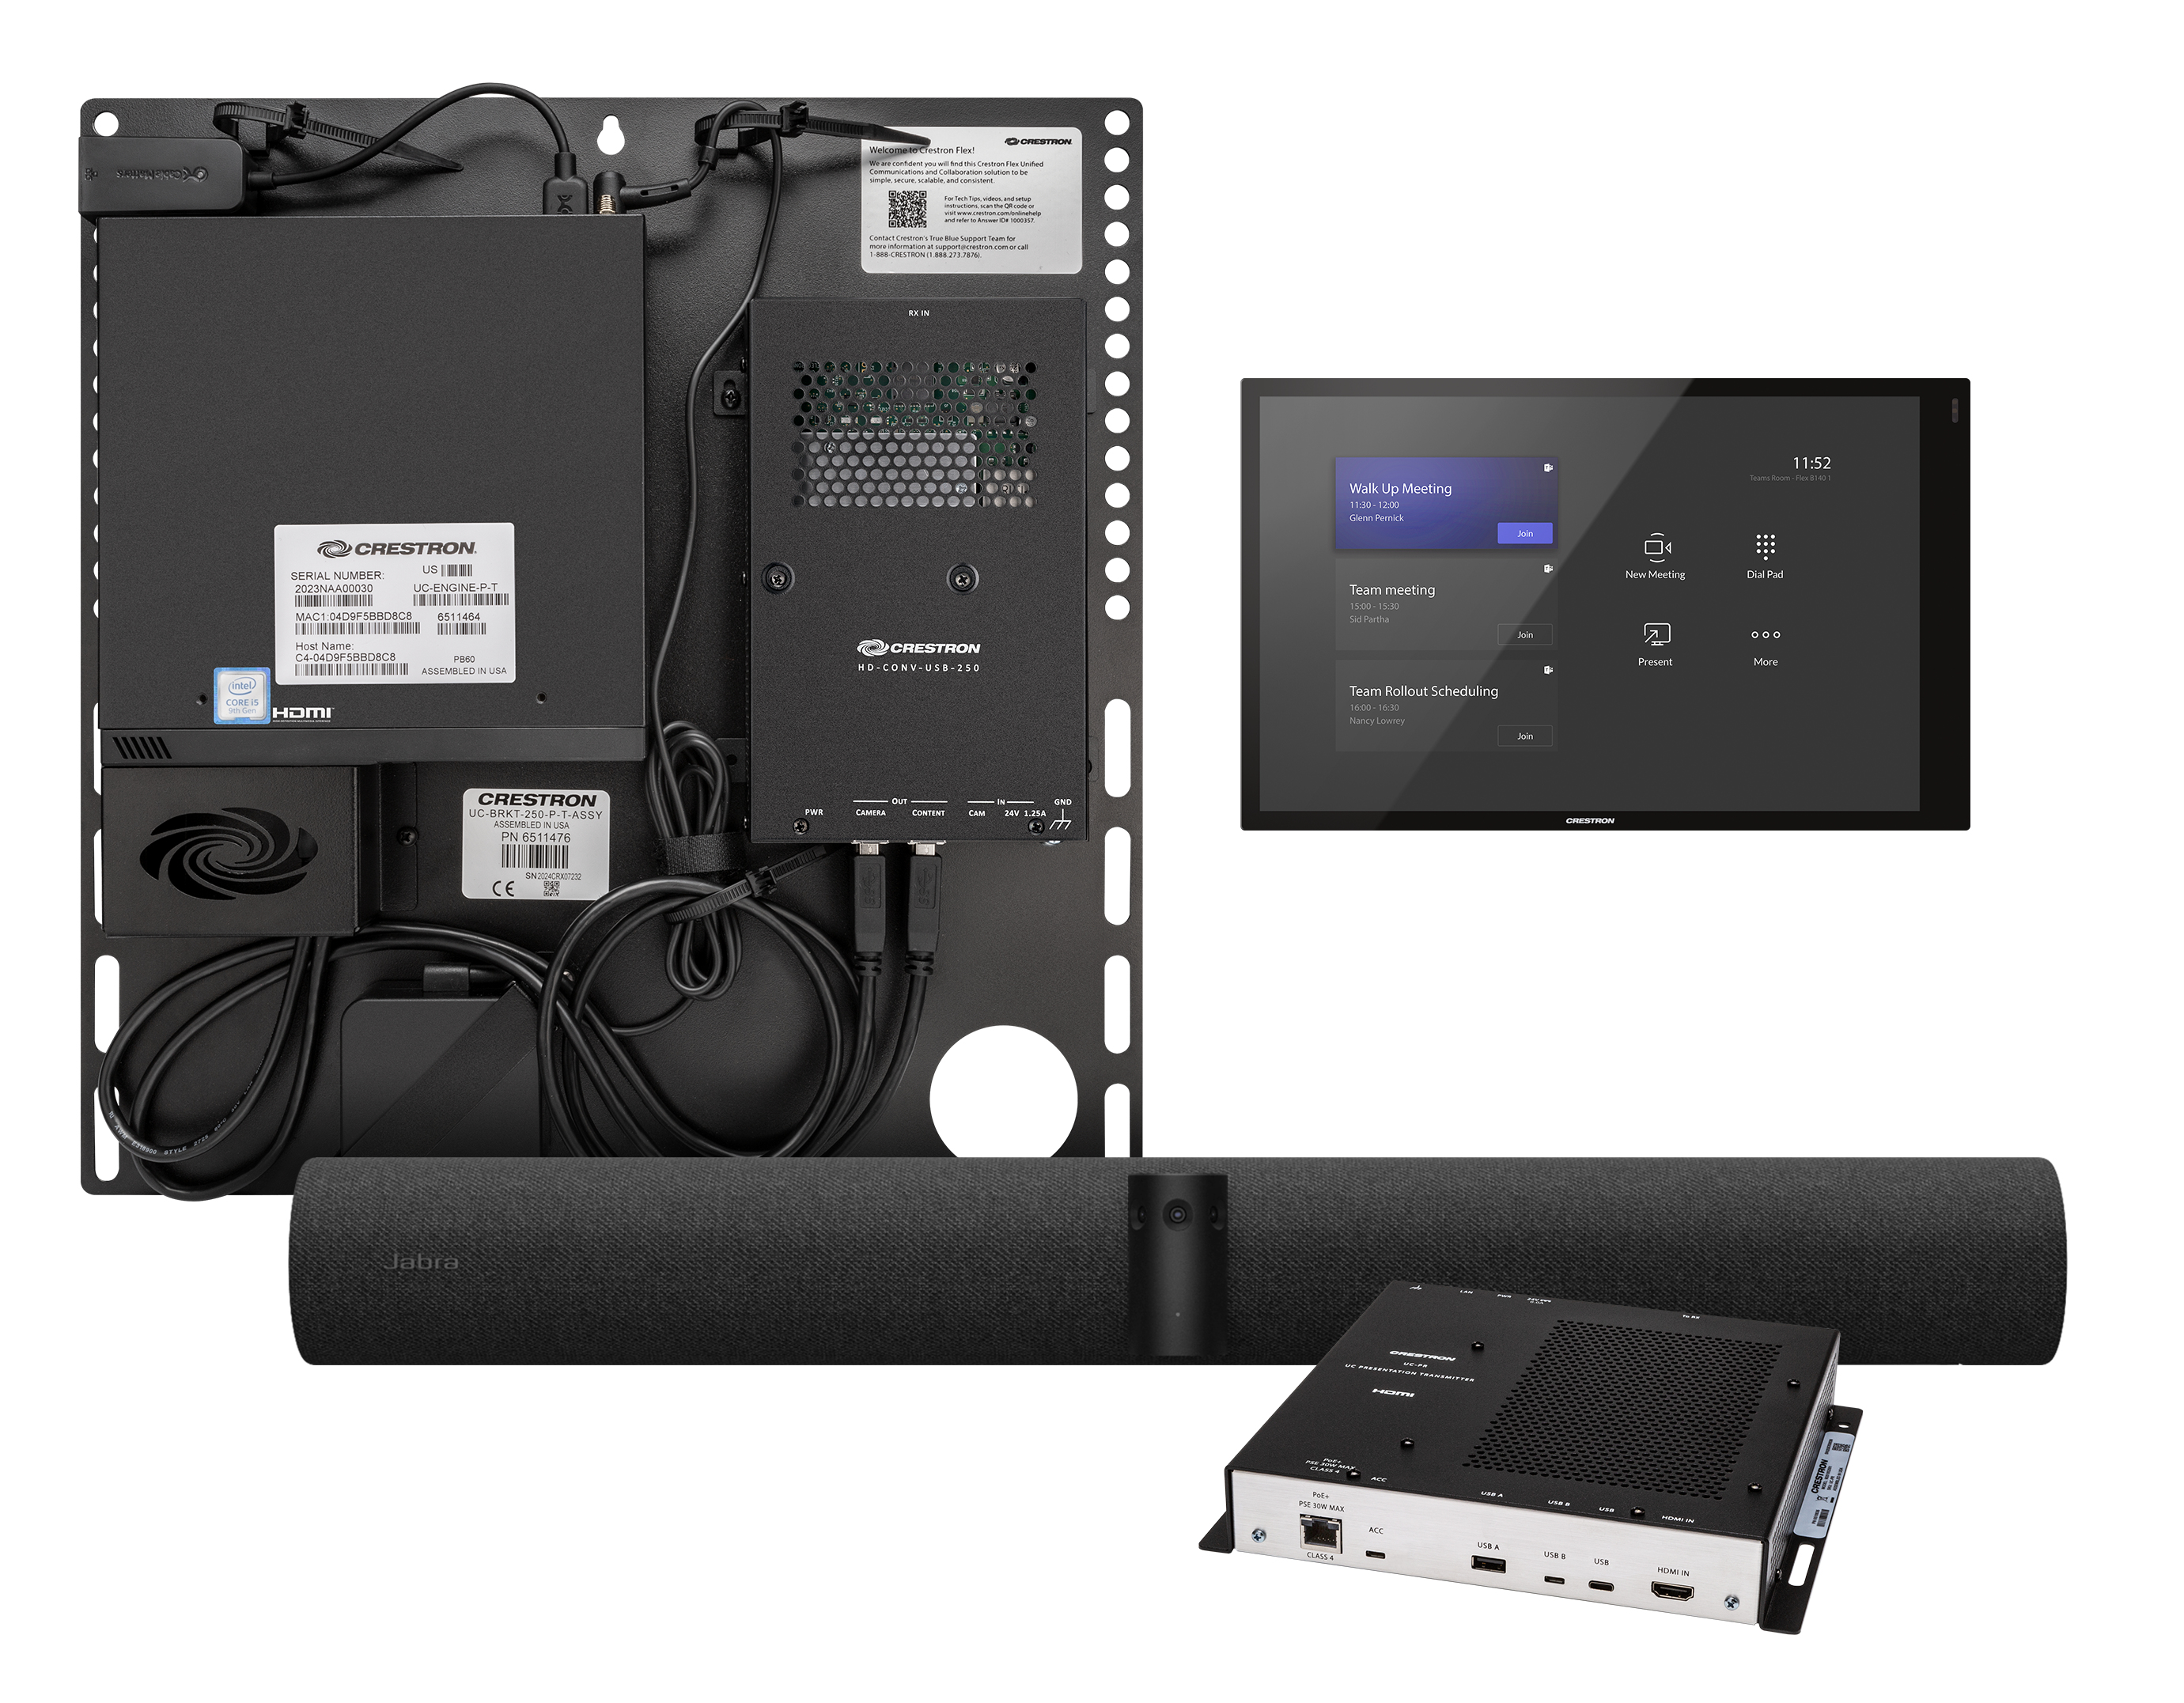 Crestron Flex Advanced Small Room videokonferenssystem 13 MP Nätverksansluten (Ethernet) Videokonferenssystem för grupper